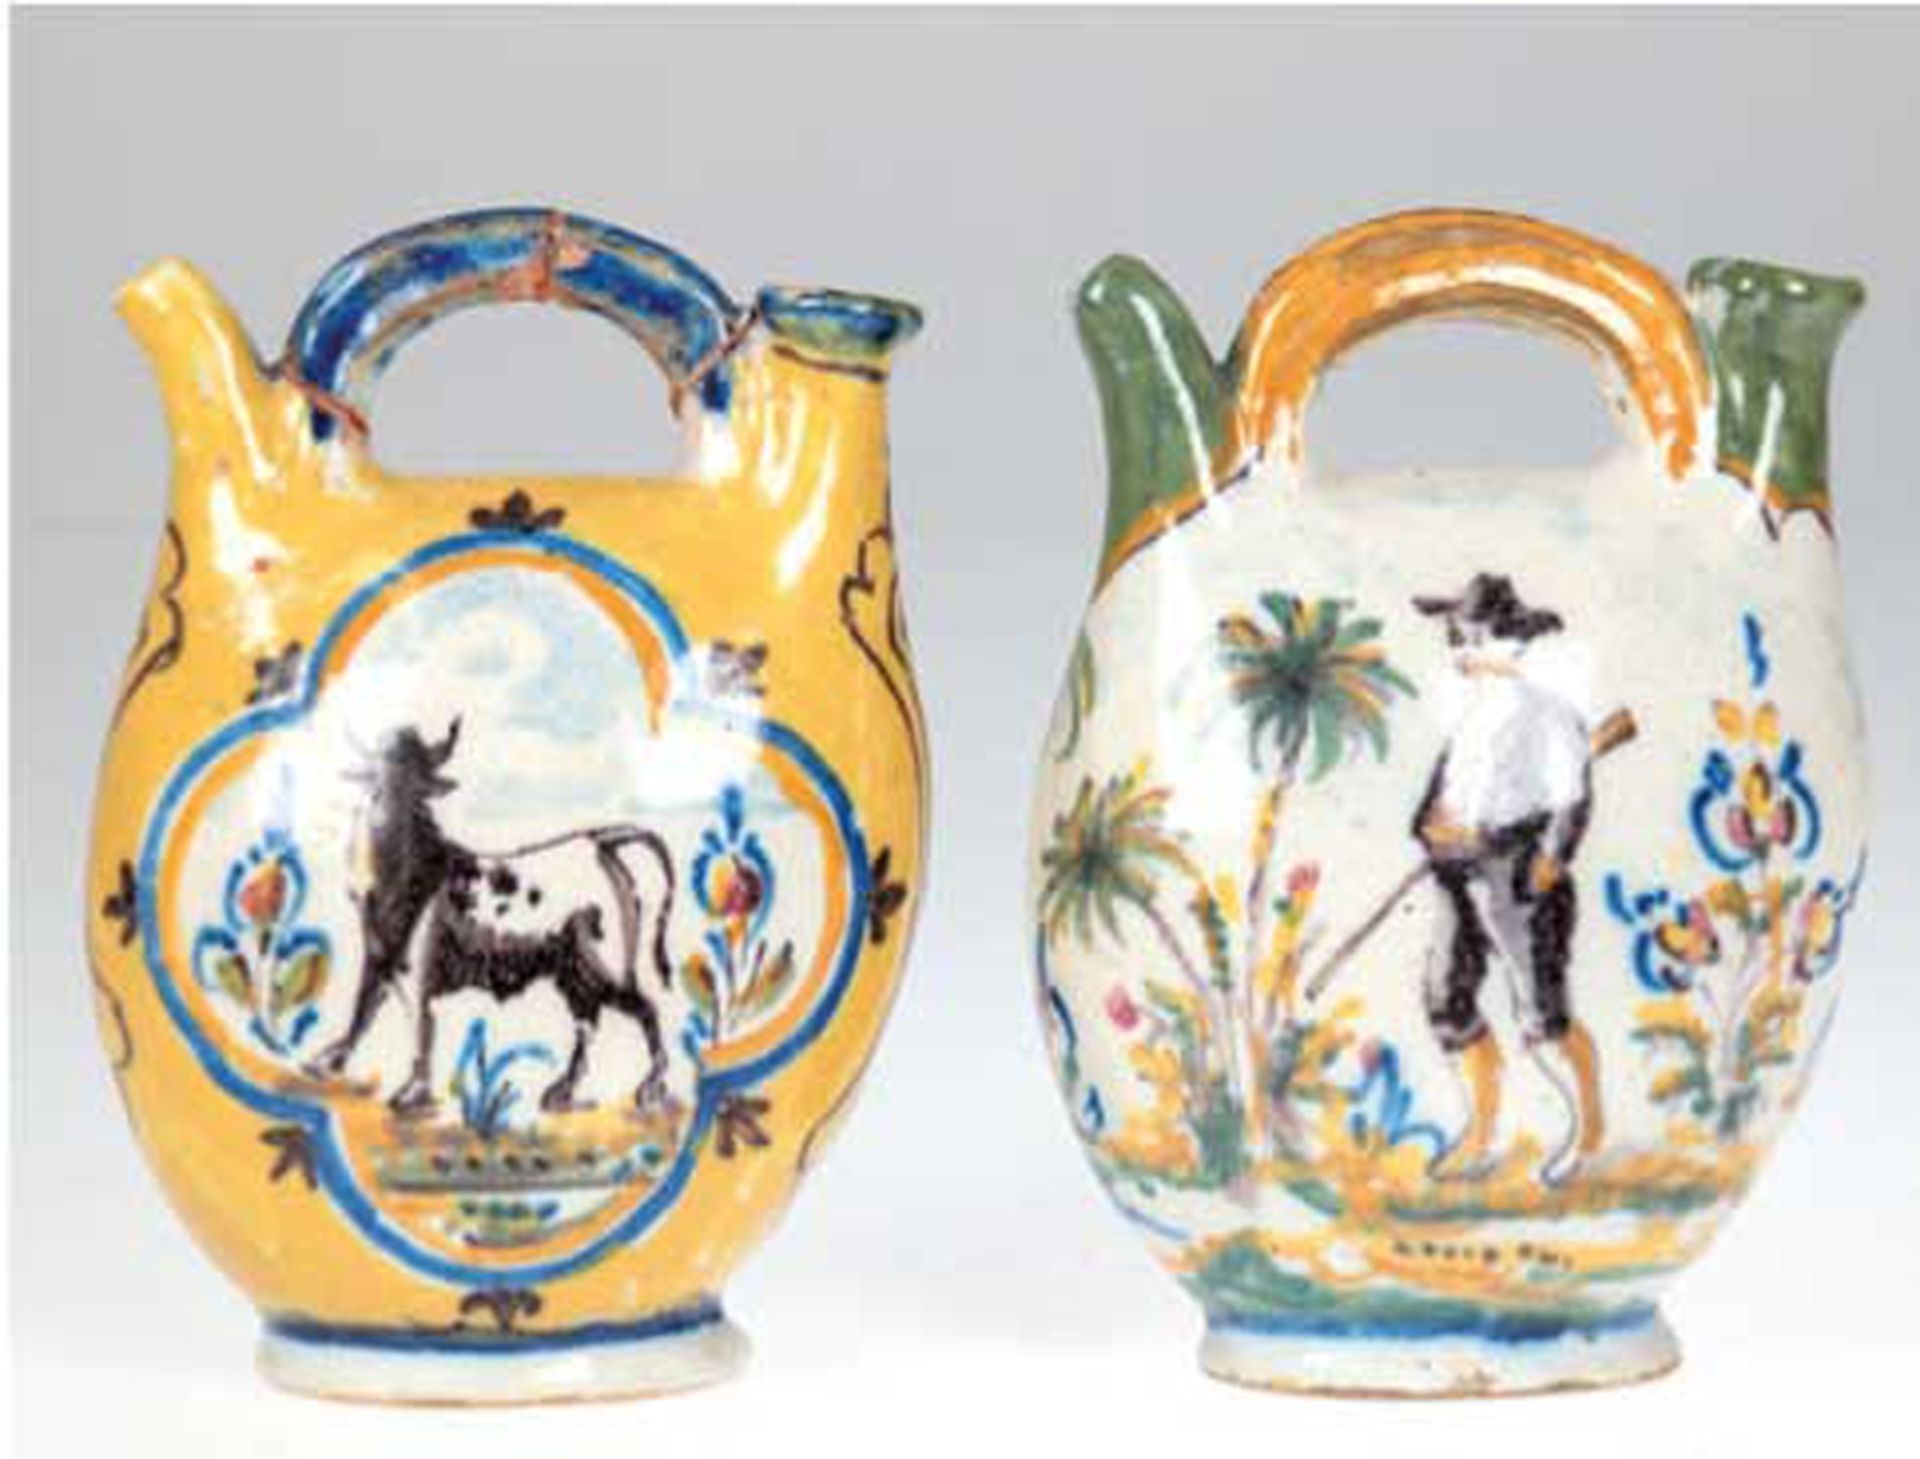 2 Öl-Kännchen, 19. Jh., Keramik, polychrom bemalt mit Jäger und Schiff bzw. mit Stier und Hase jage